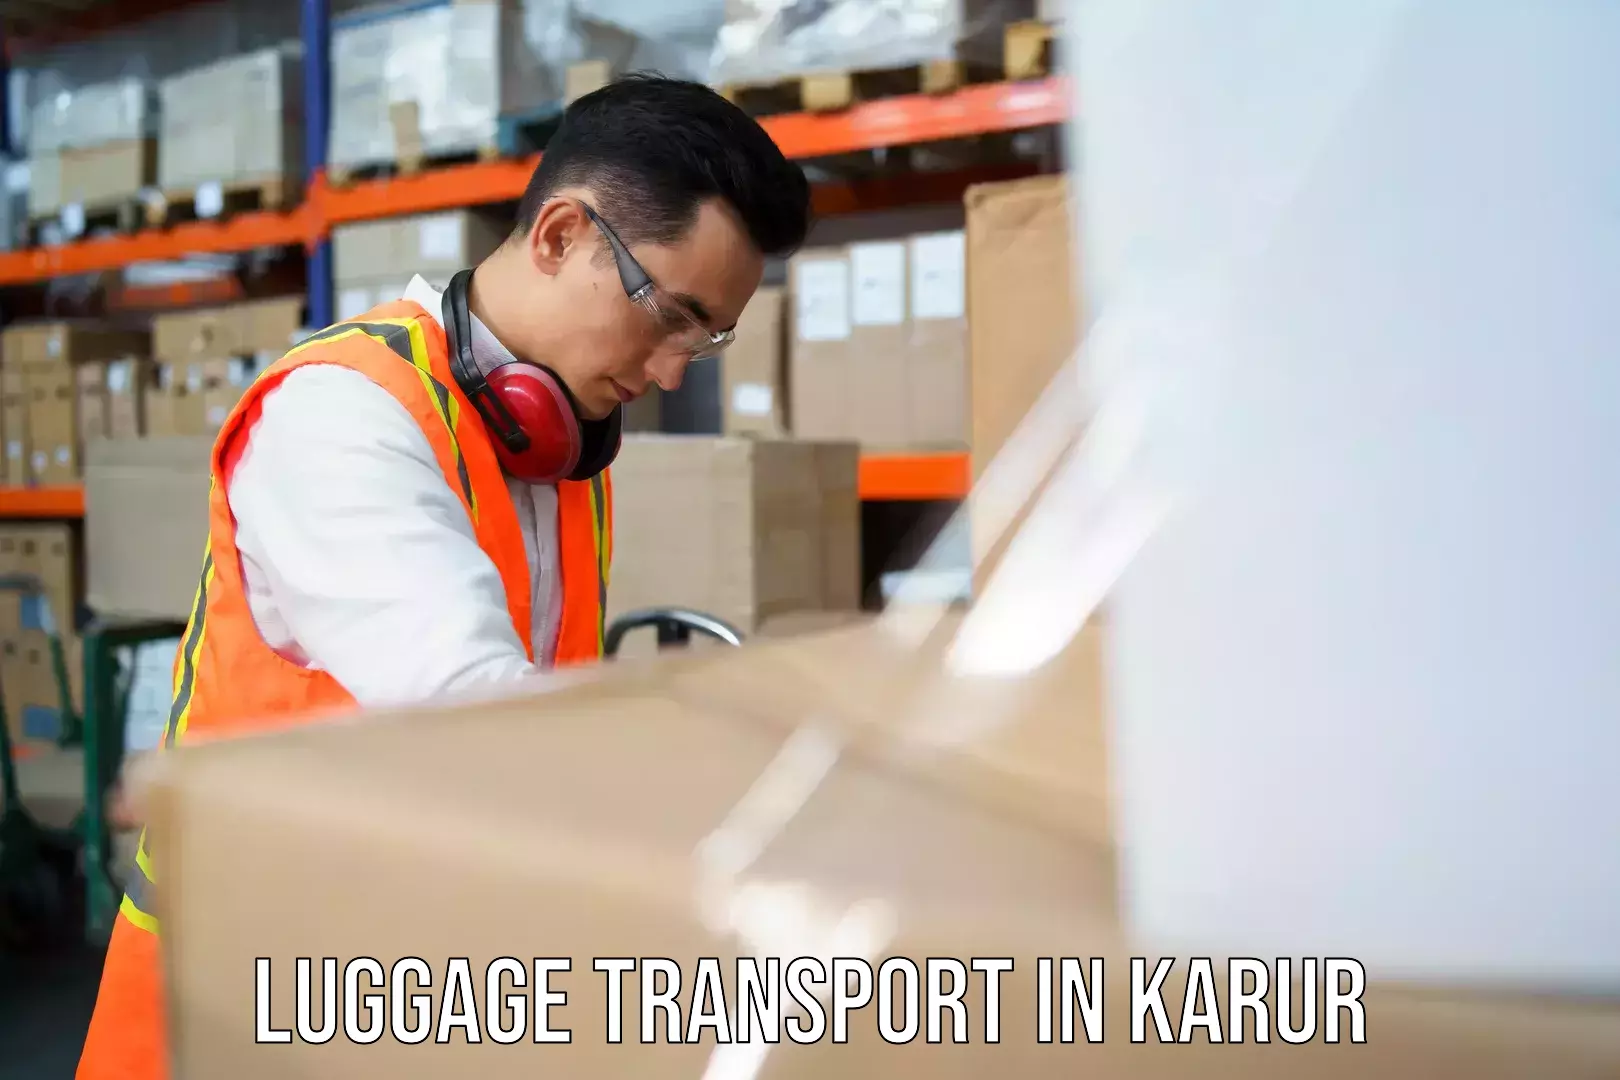 Digital baggage courier in Karur